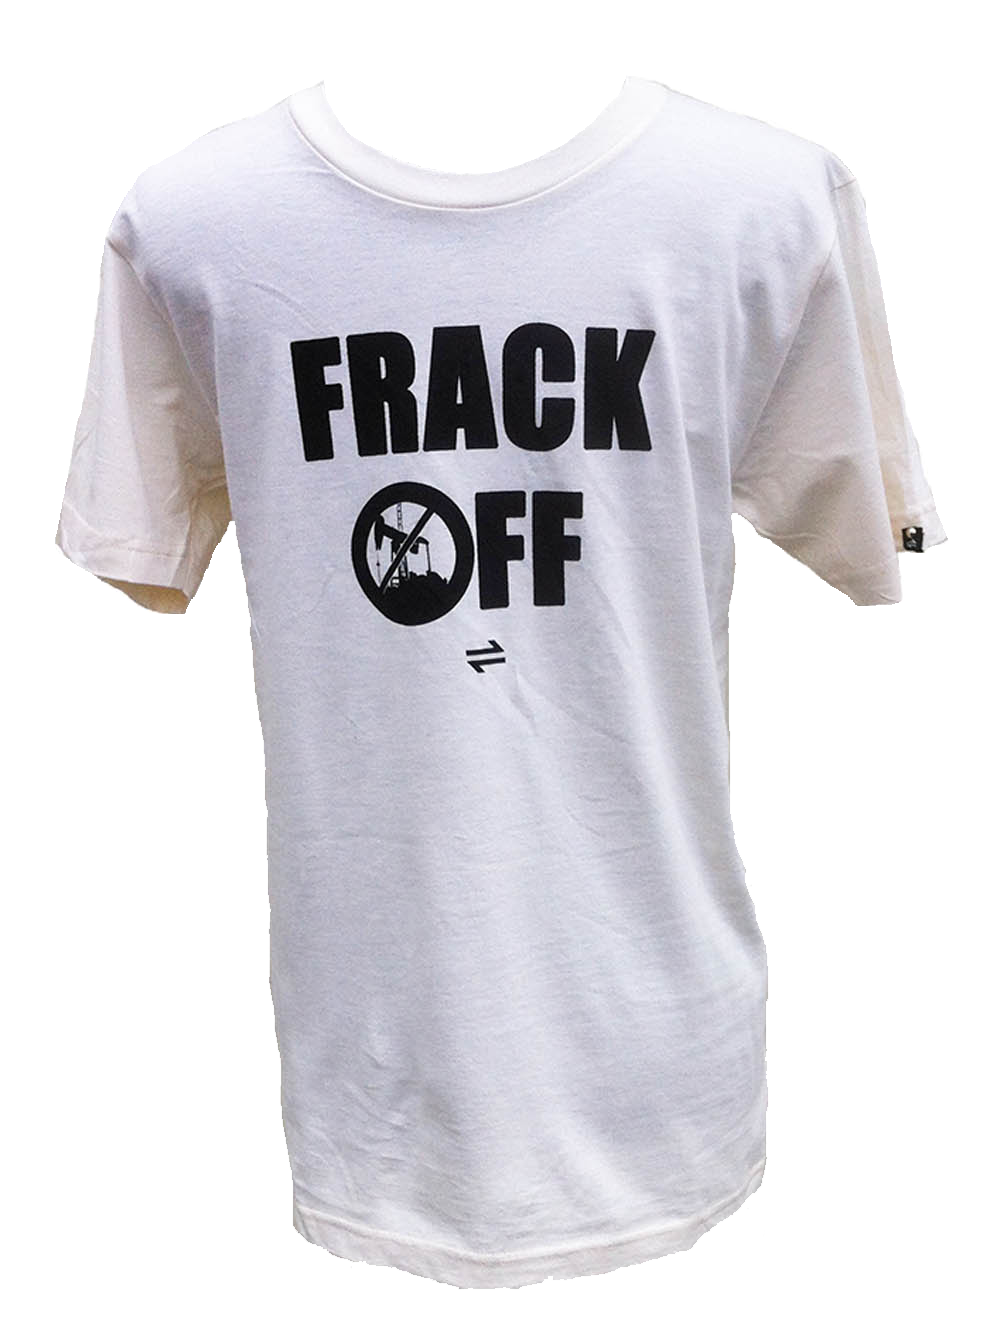 Equillibrium Frack OFF Organic Cotton T-shirt (Unisex) - Equillibrium - 1